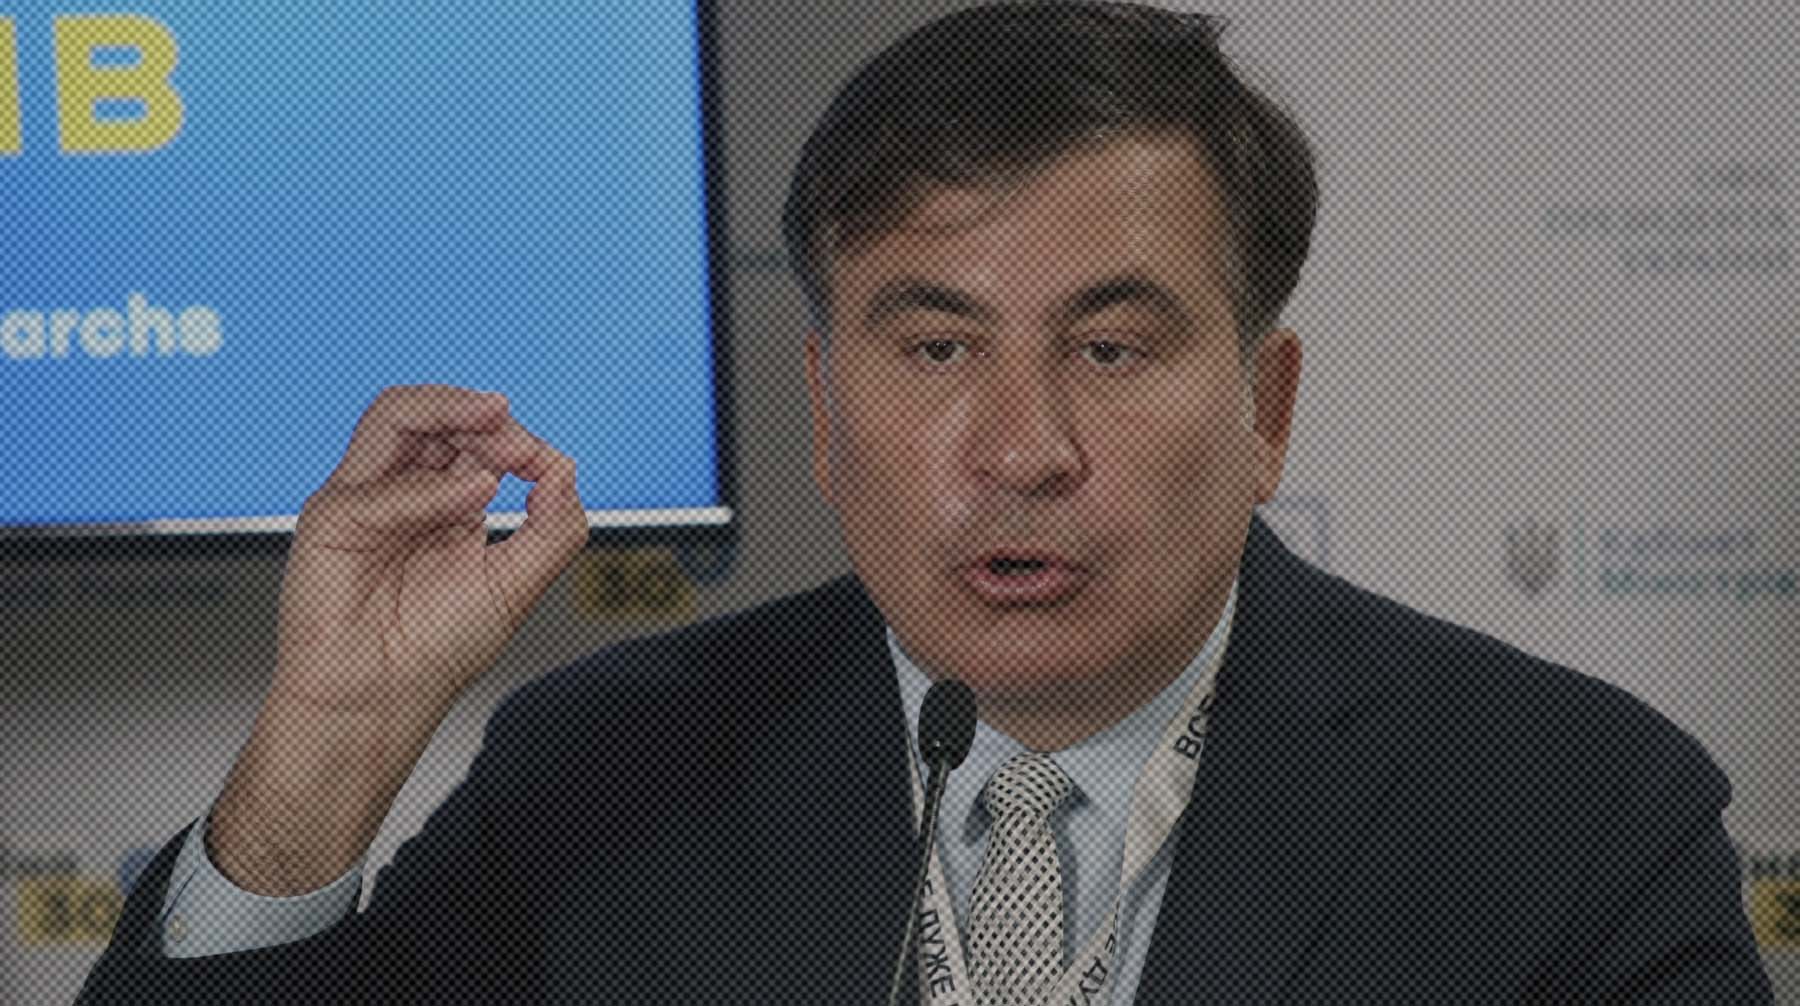 По словам политика, коронавирус был занесен в страну искусственно Михаил Саакашвили